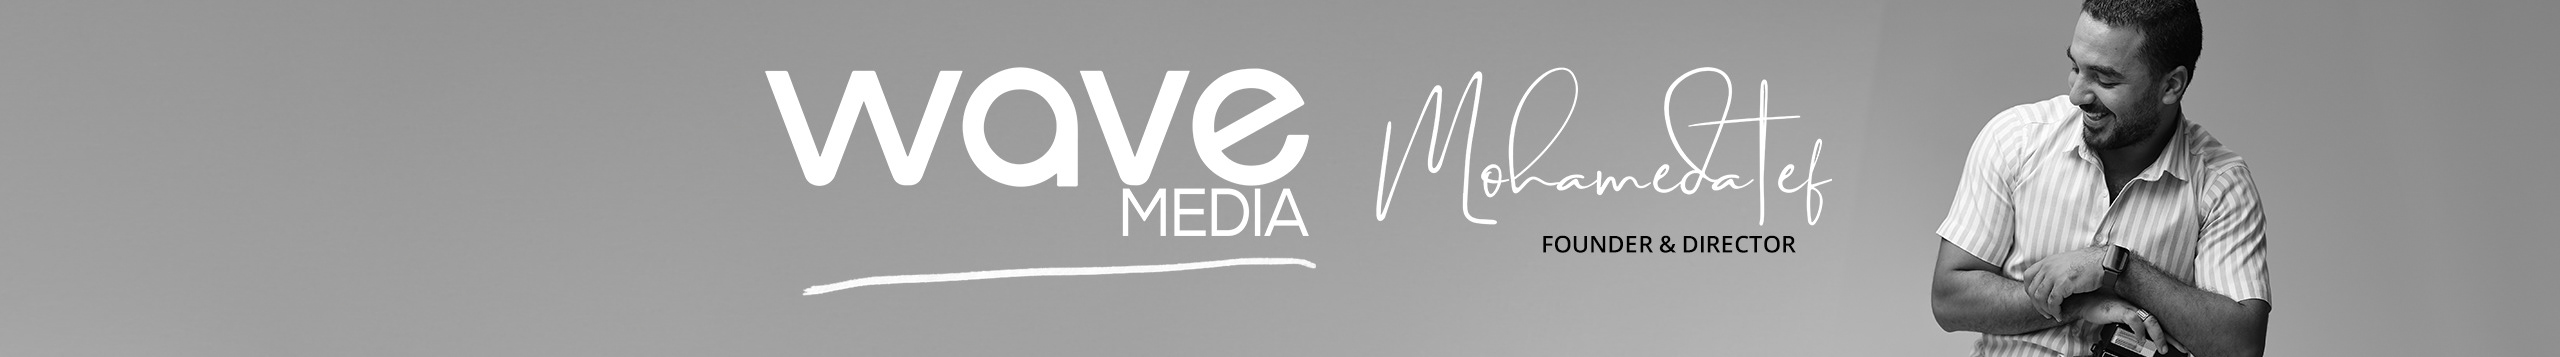 WAVE MEDIA's profile banner